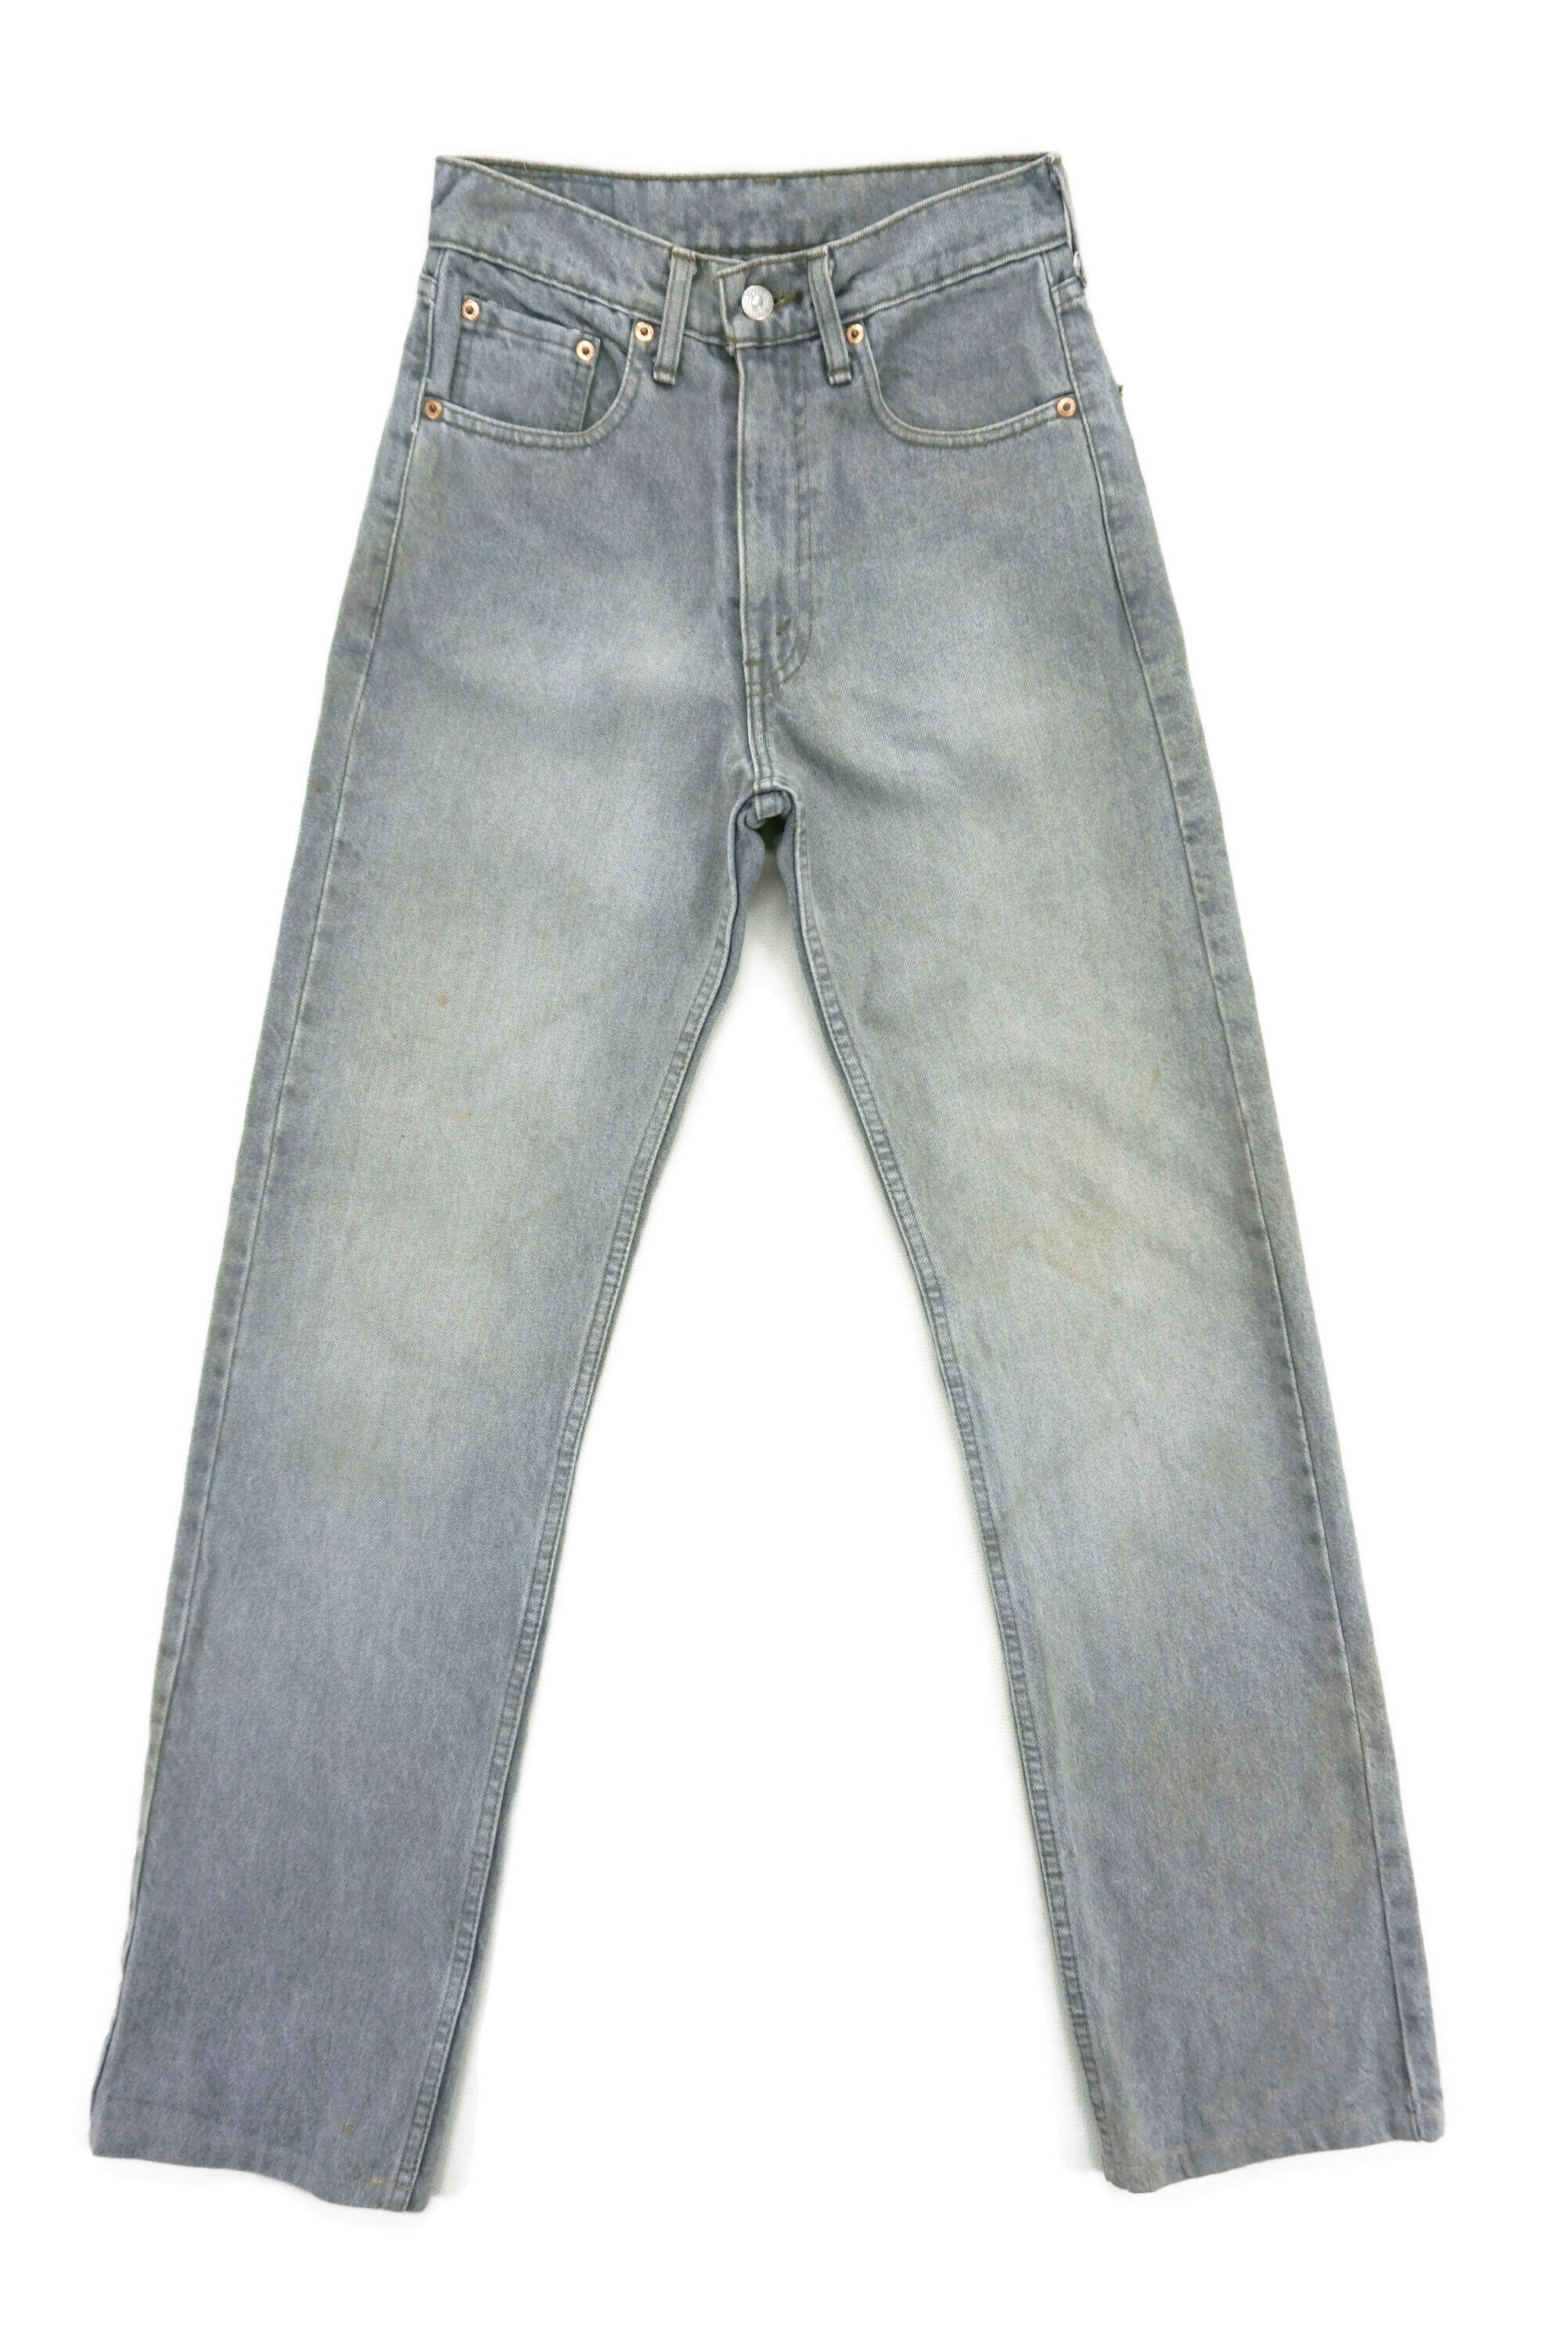 Levis 509 Jeans Size 27 W26xL31.75 90s Levis 509 Denim Jeans | Etsy